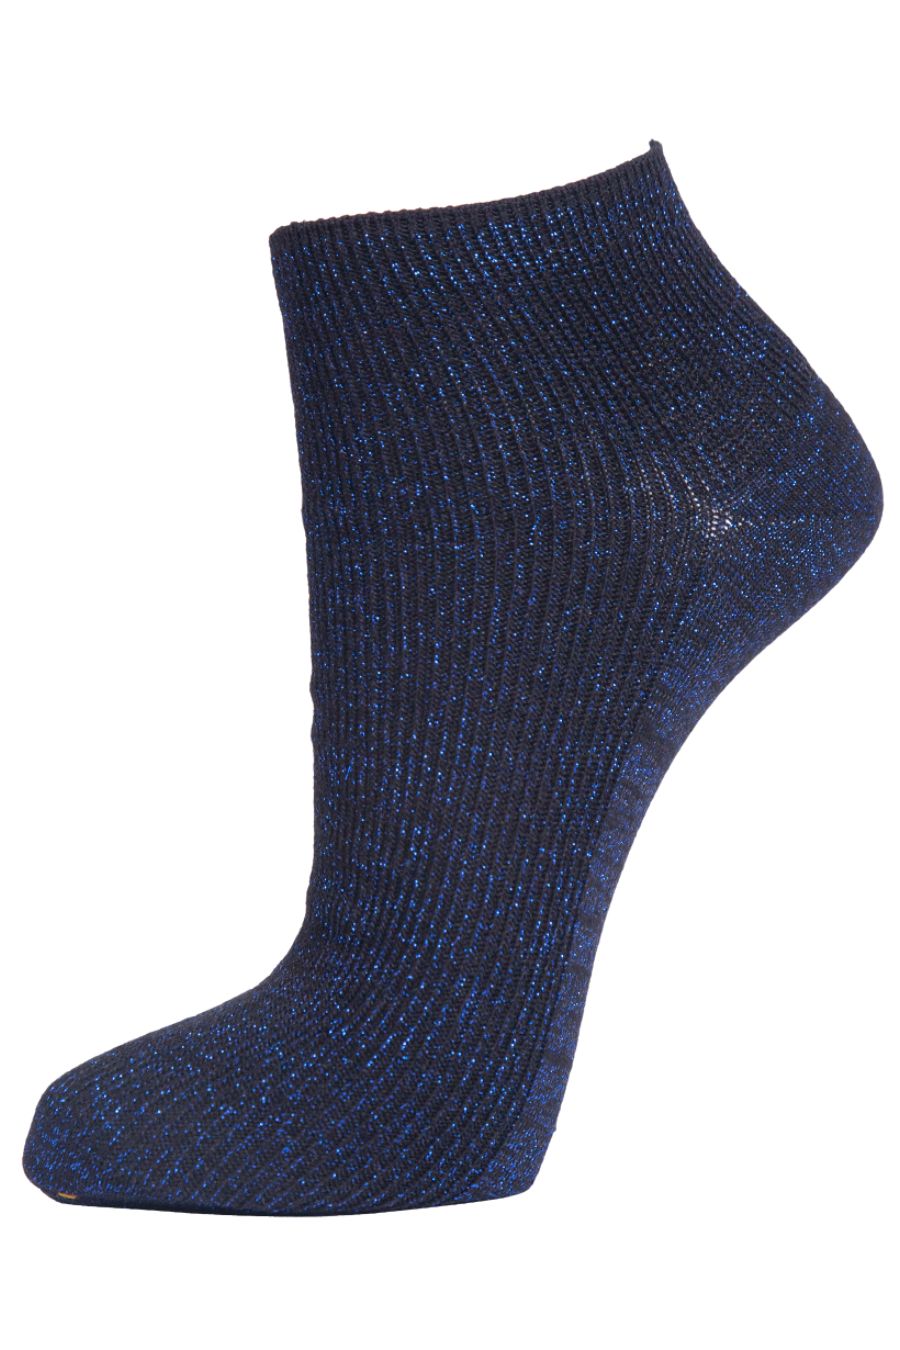 Womens Glitter Anklet Trainer Socks Sparkly Shimmer Royal Blue